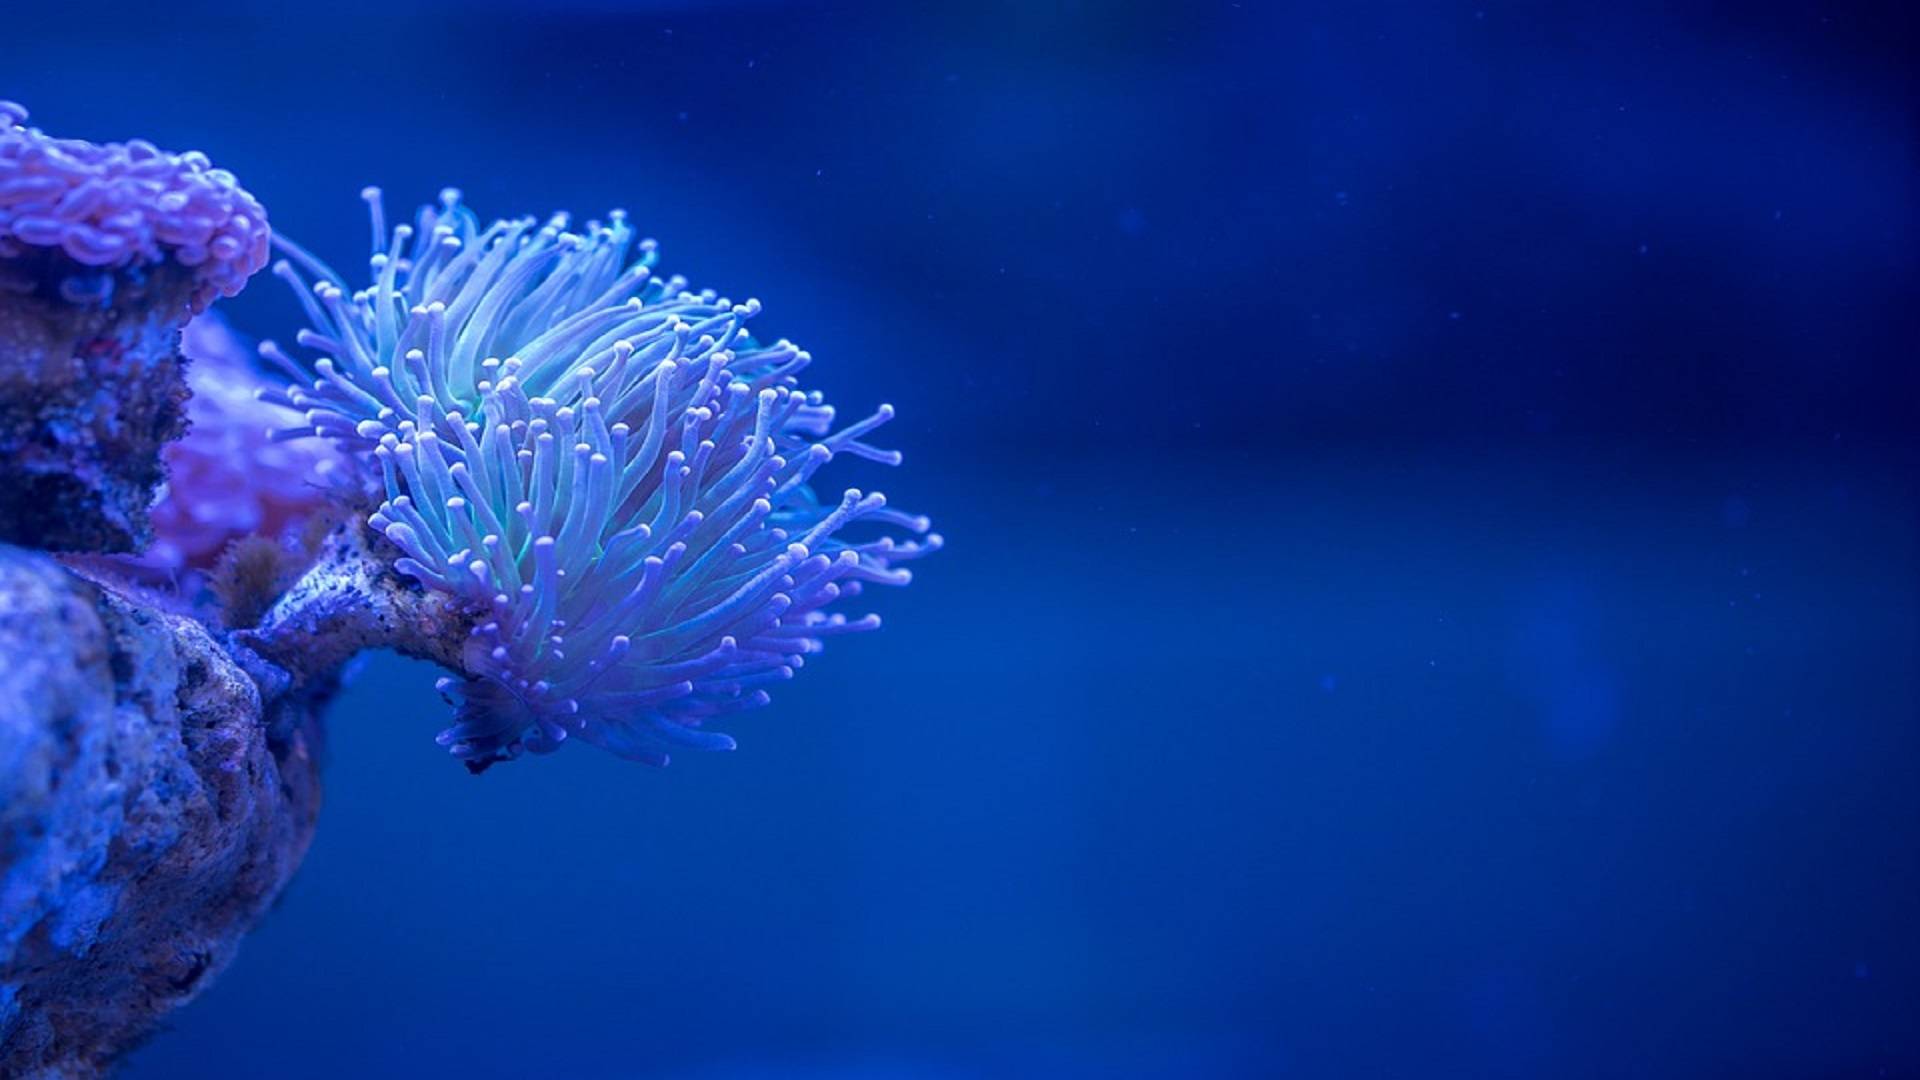 电脑开始工作或学习时, 第一眼看到的是蔚蓝的大海或者奇妙的海洋生物